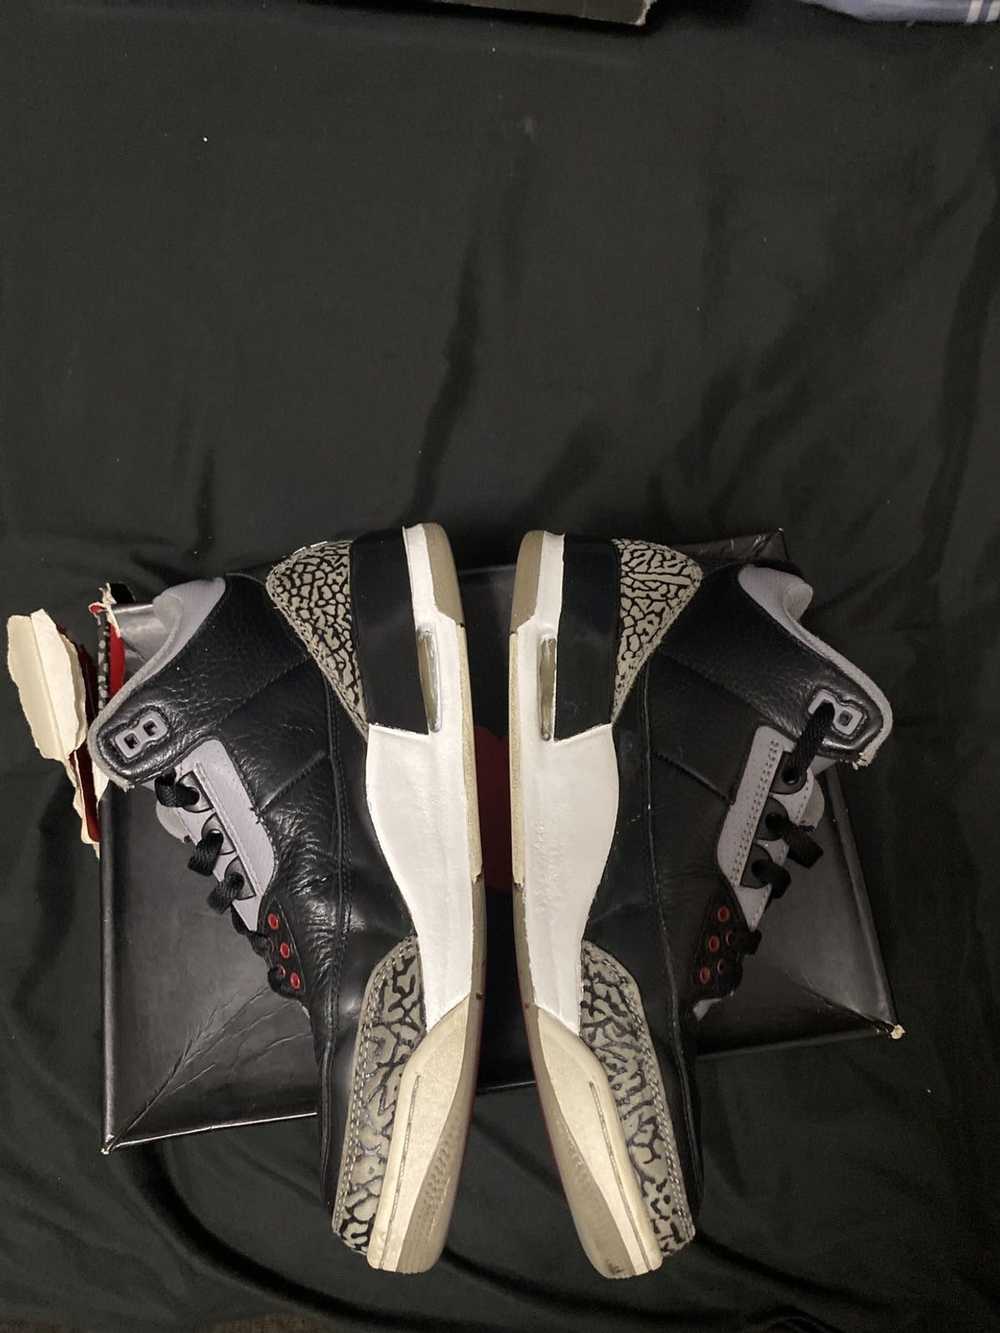 Jordan Brand × Nike Air Jordan 3 black cement - image 5